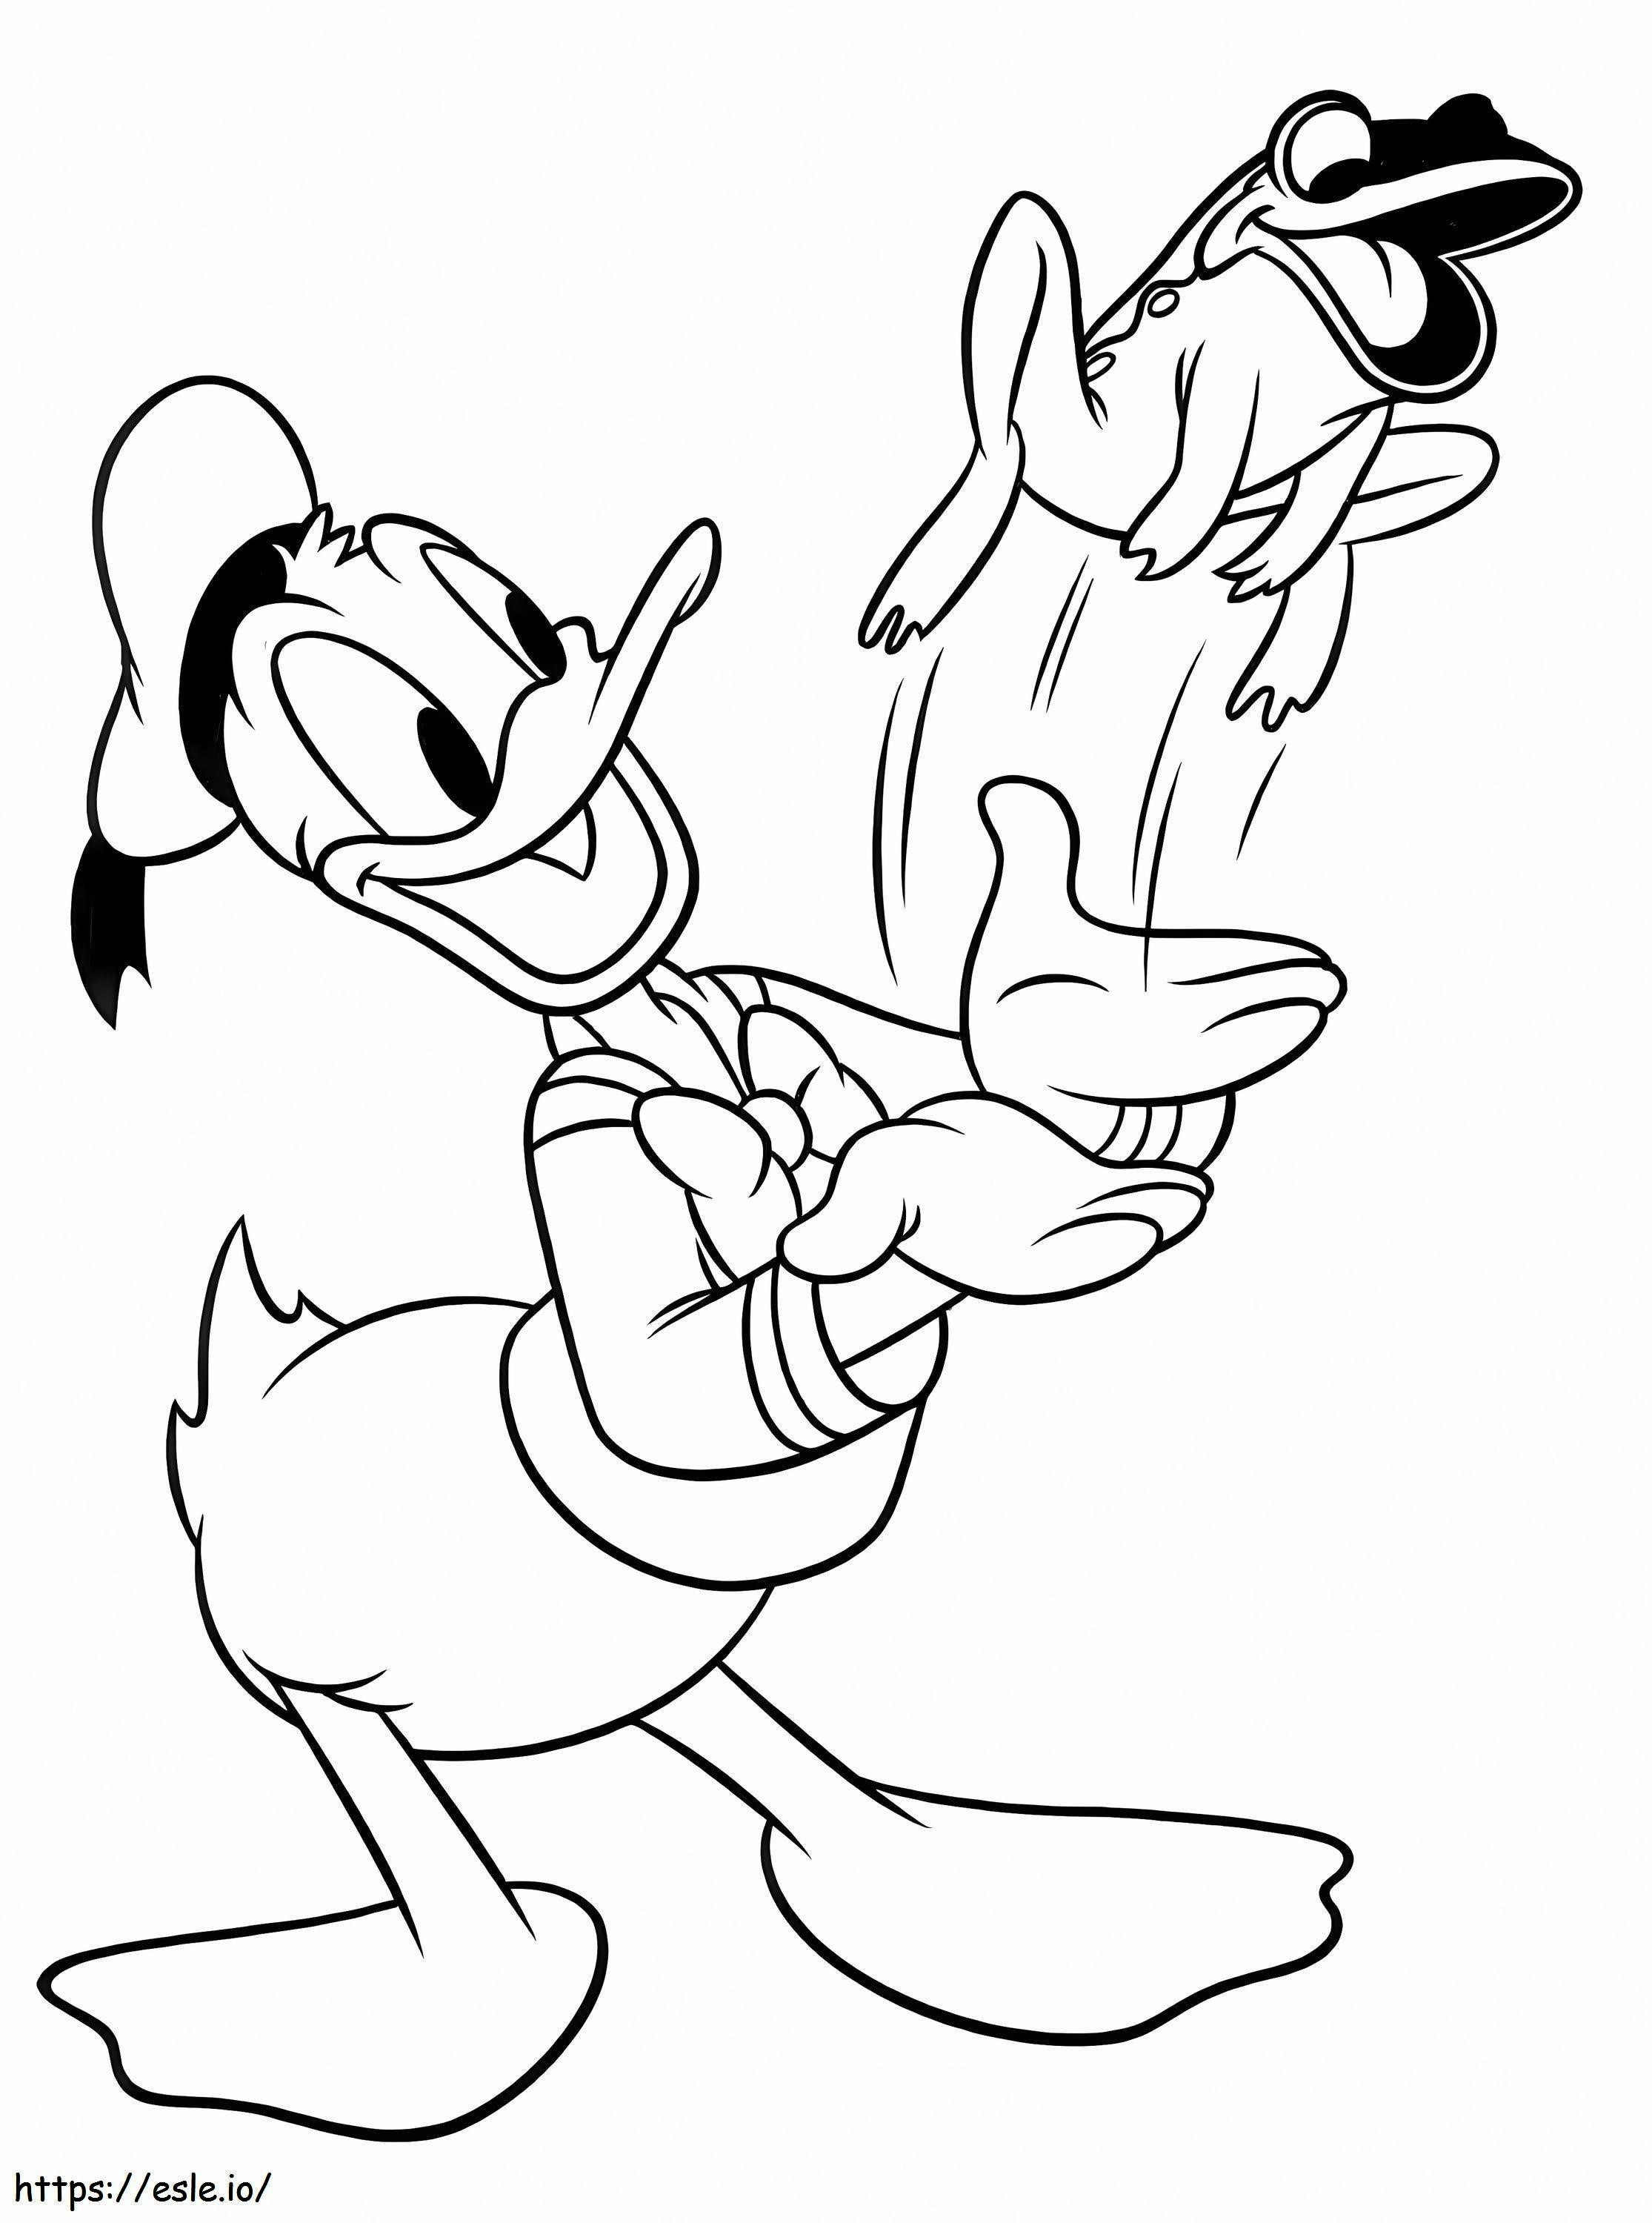 Pato Donald com sapo para colorir